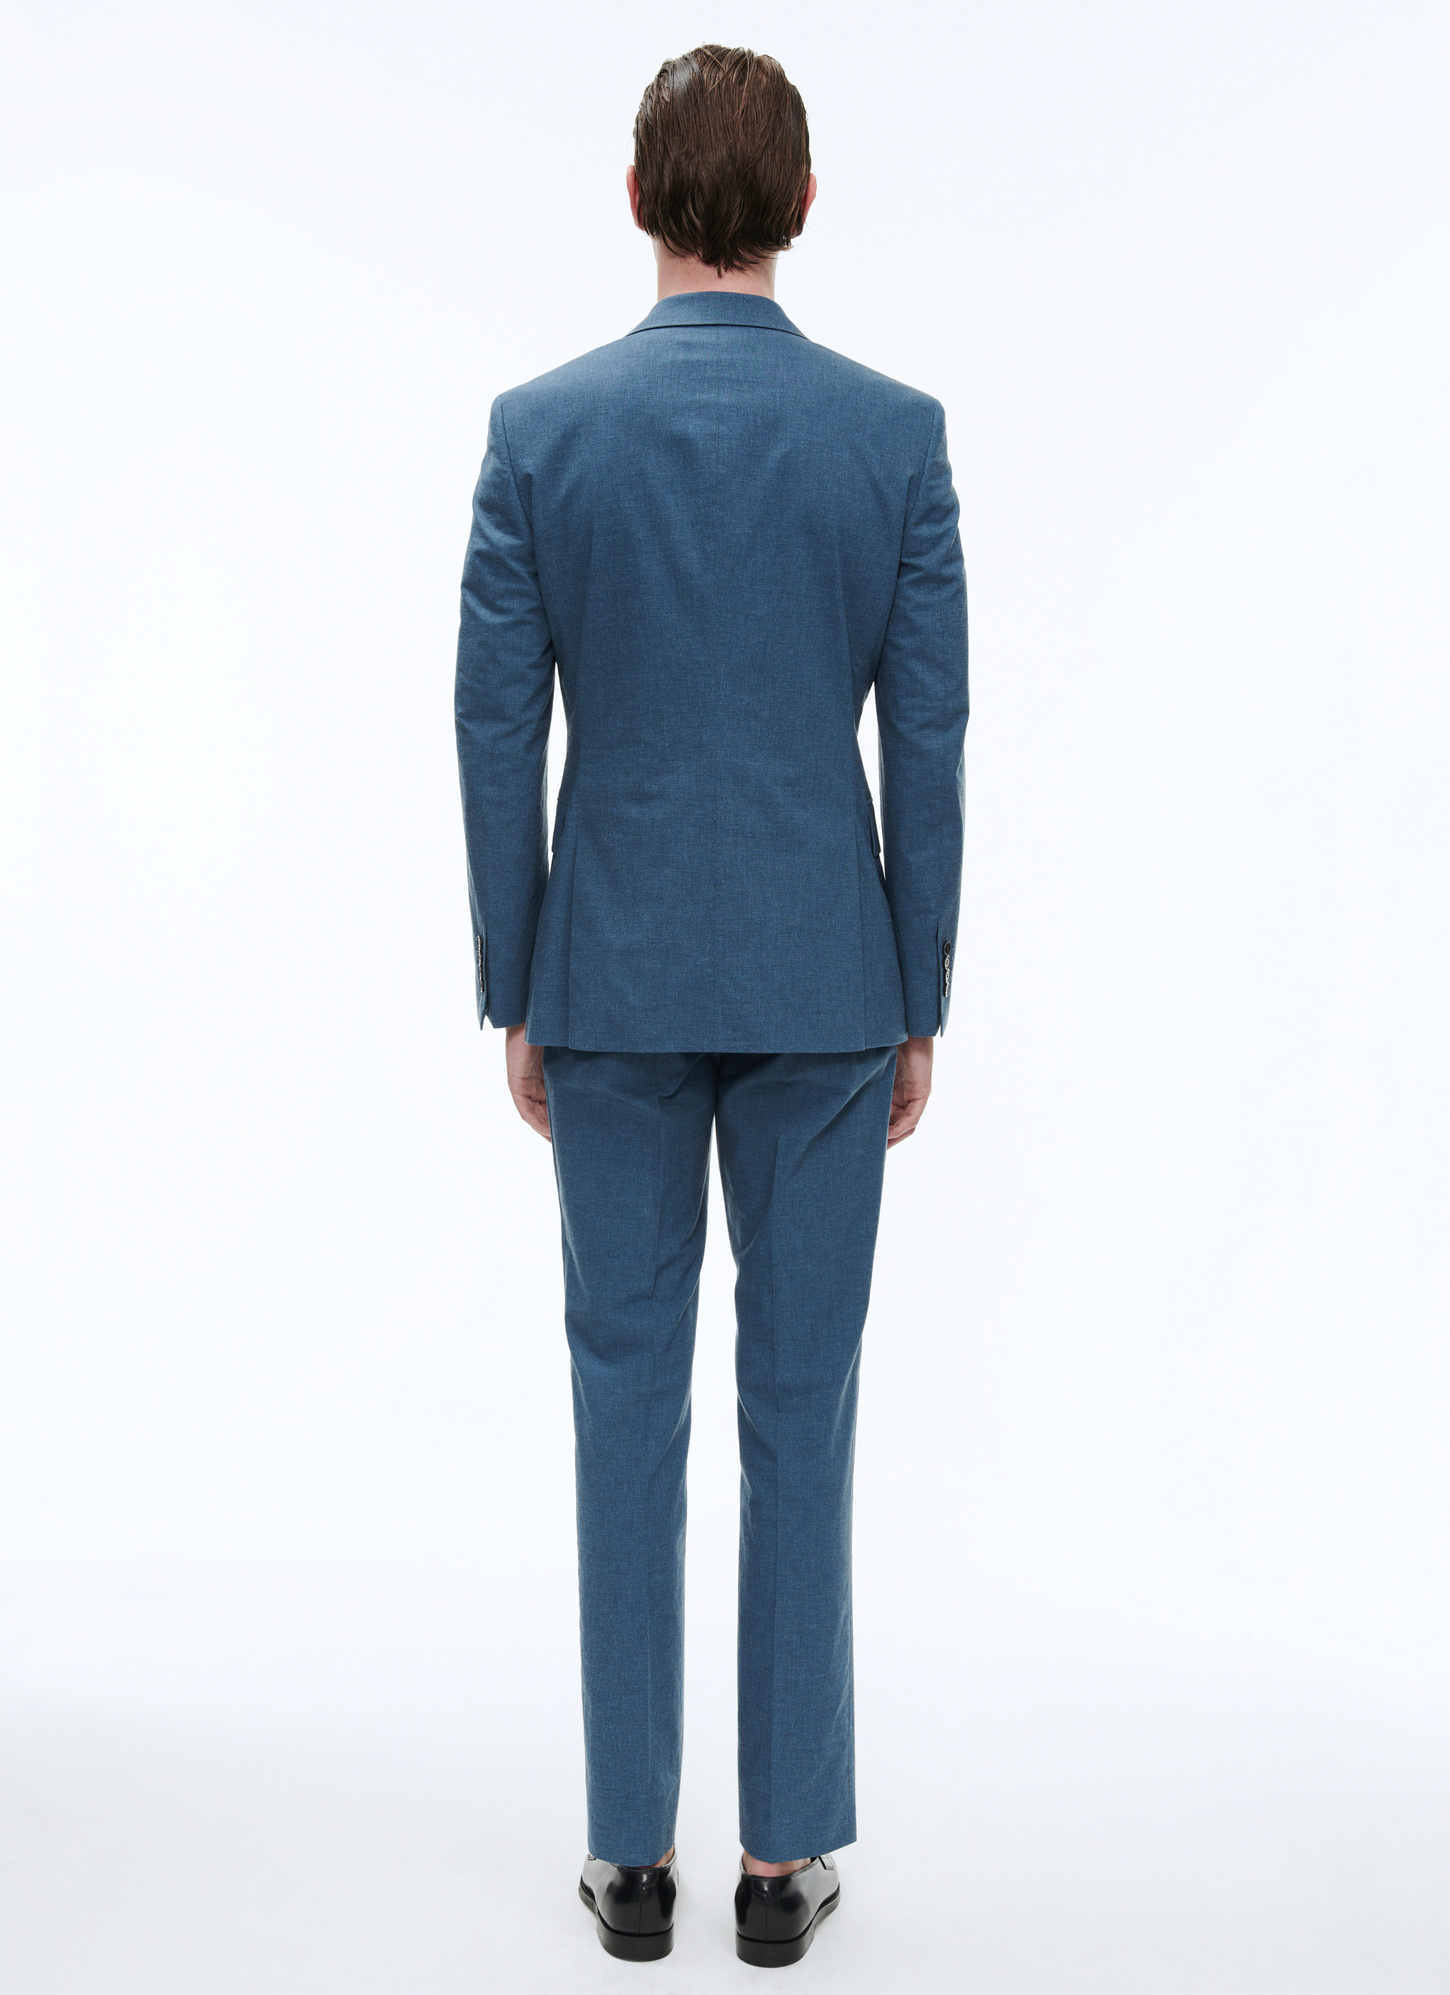 Light blue fitted cut suit C3AXUN-BC07-35 - Men's suit